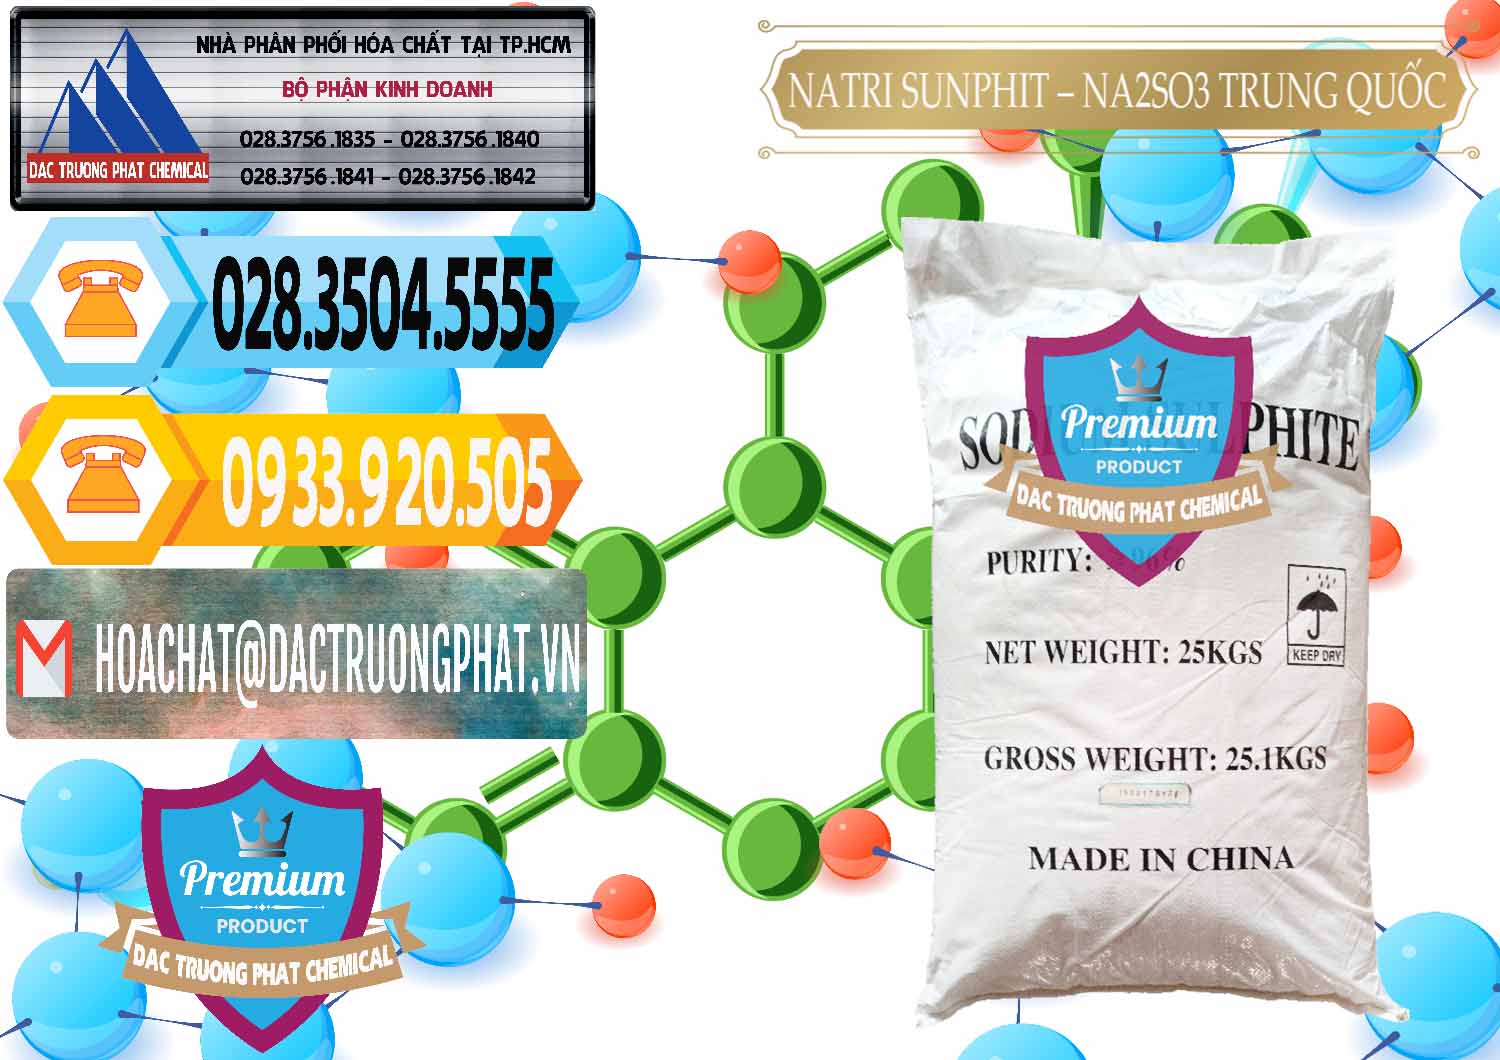 Bán & cung cấp Natri Sunphit - NA2SO3 Trung Quốc China - 0106 - Chuyên phân phối - kinh doanh hóa chất tại TP.HCM - hoachattayrua.net